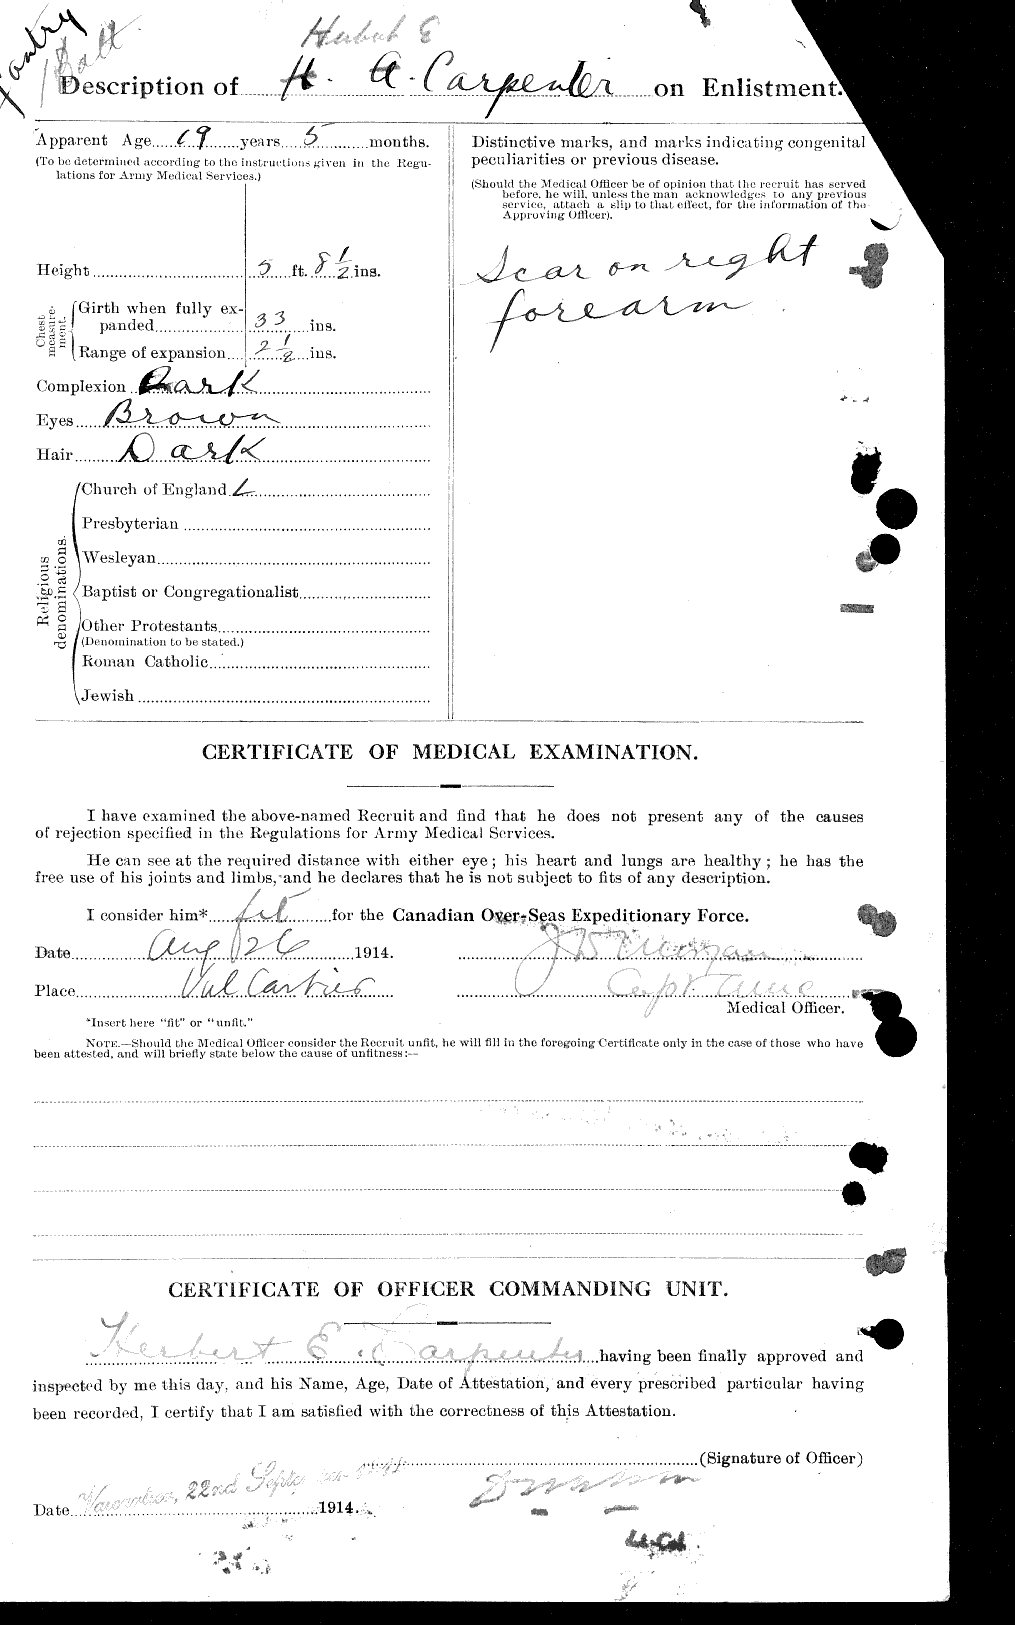 Dossiers du Personnel de la Première Guerre mondiale - CEC 005236b